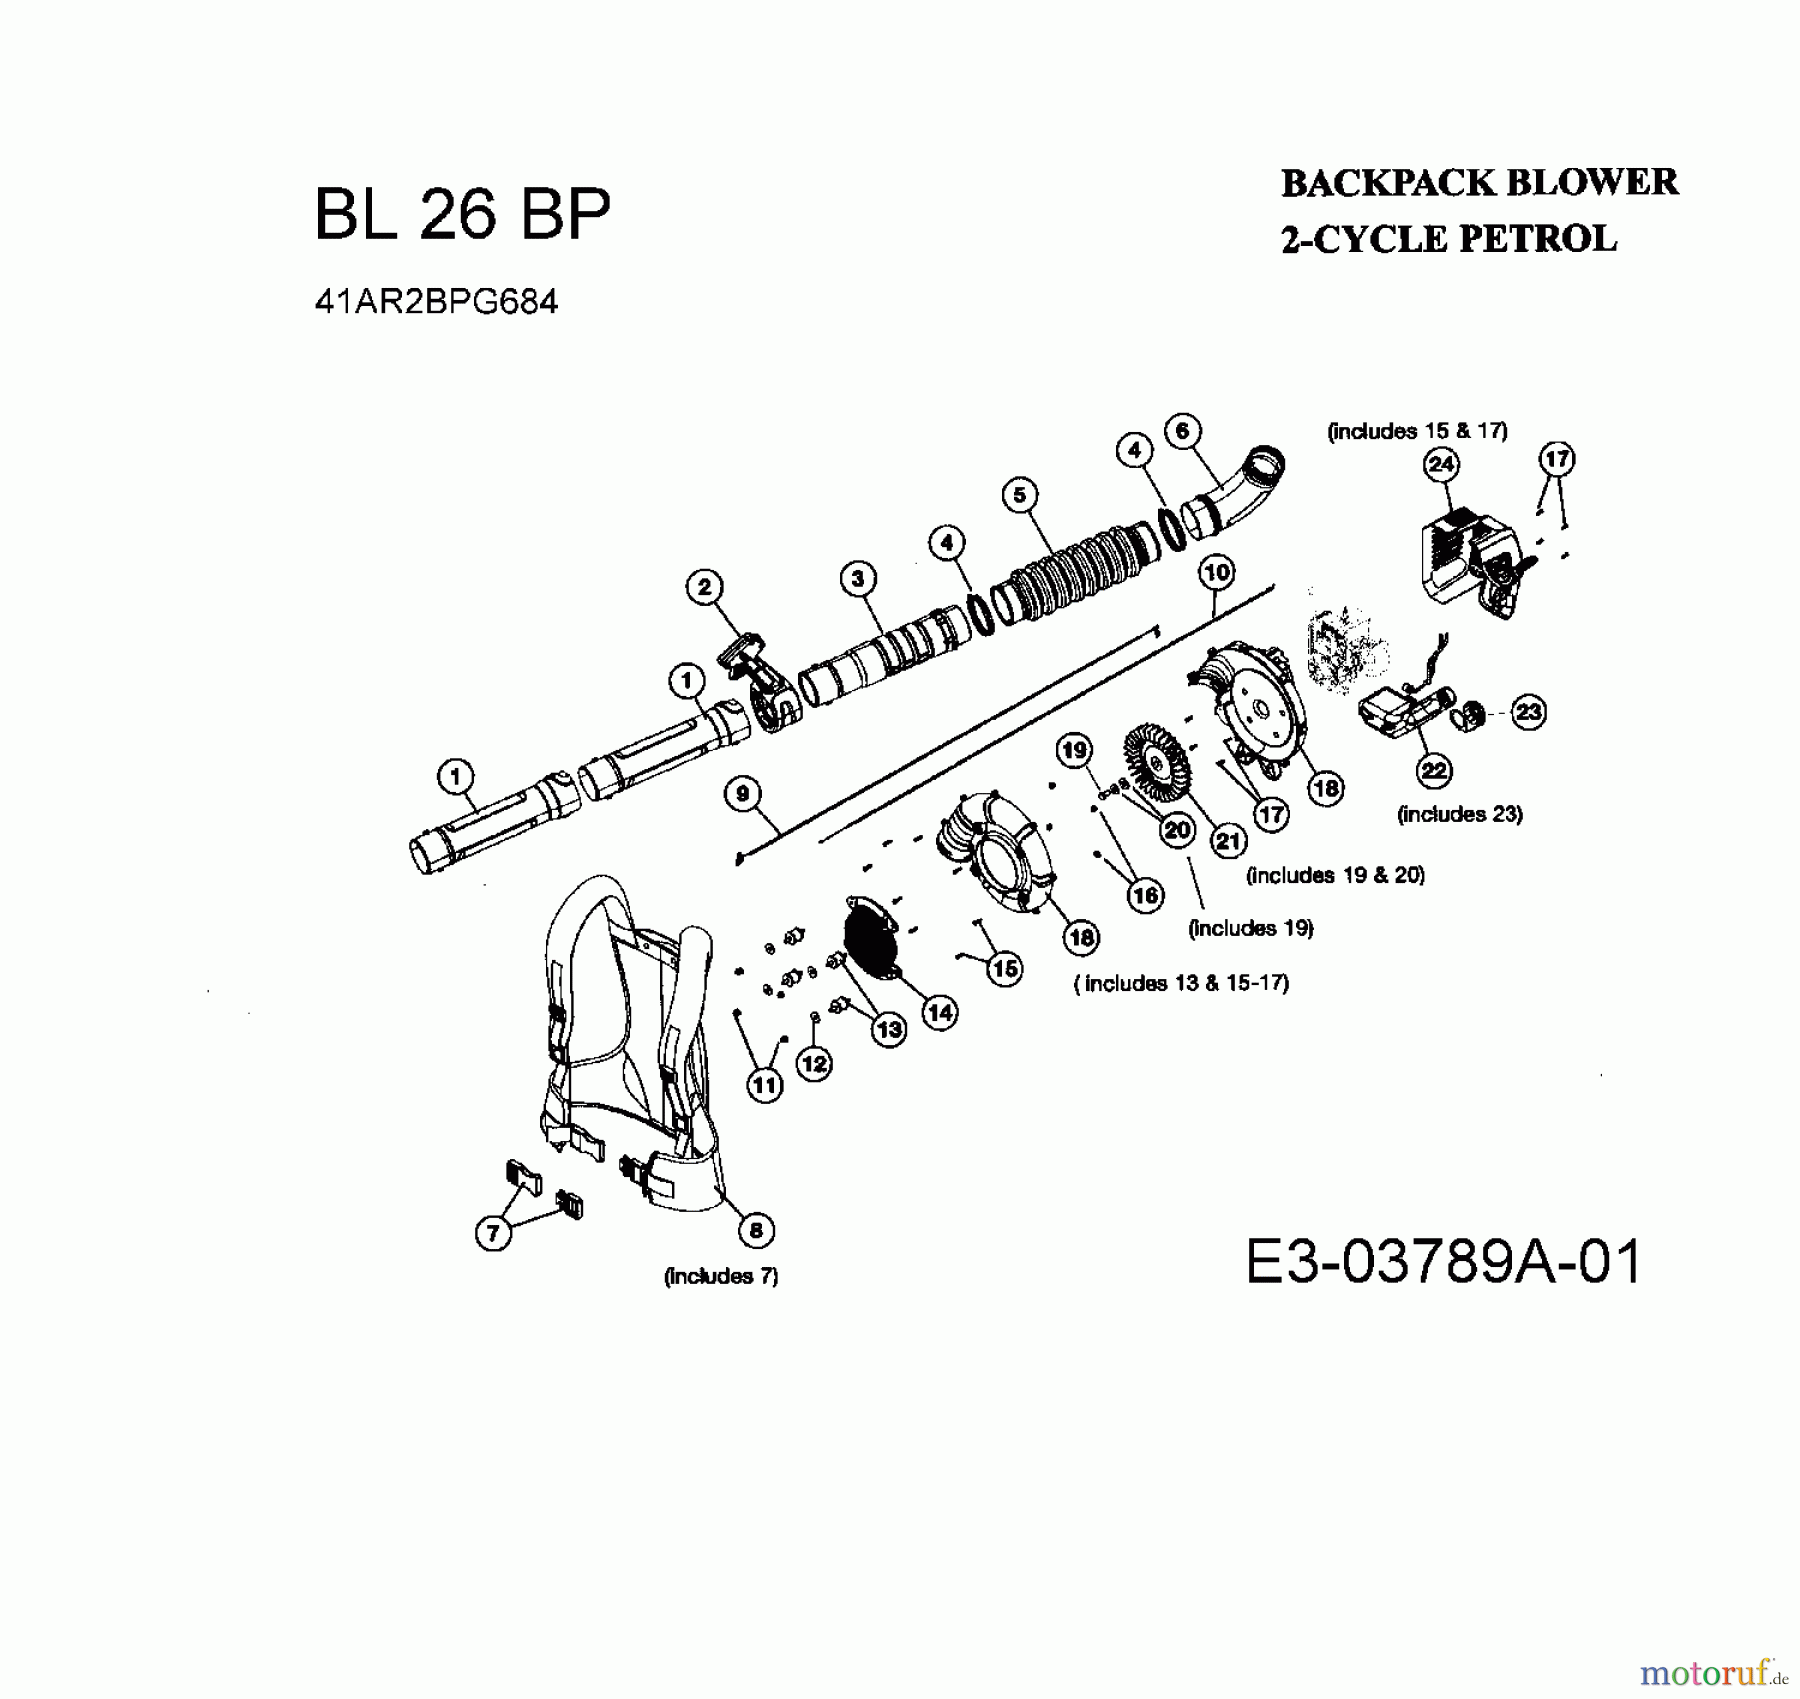  Bolens Leaf blower, Blower vac BL 26 BP 41AR2BPG684  (2008) Basic machine